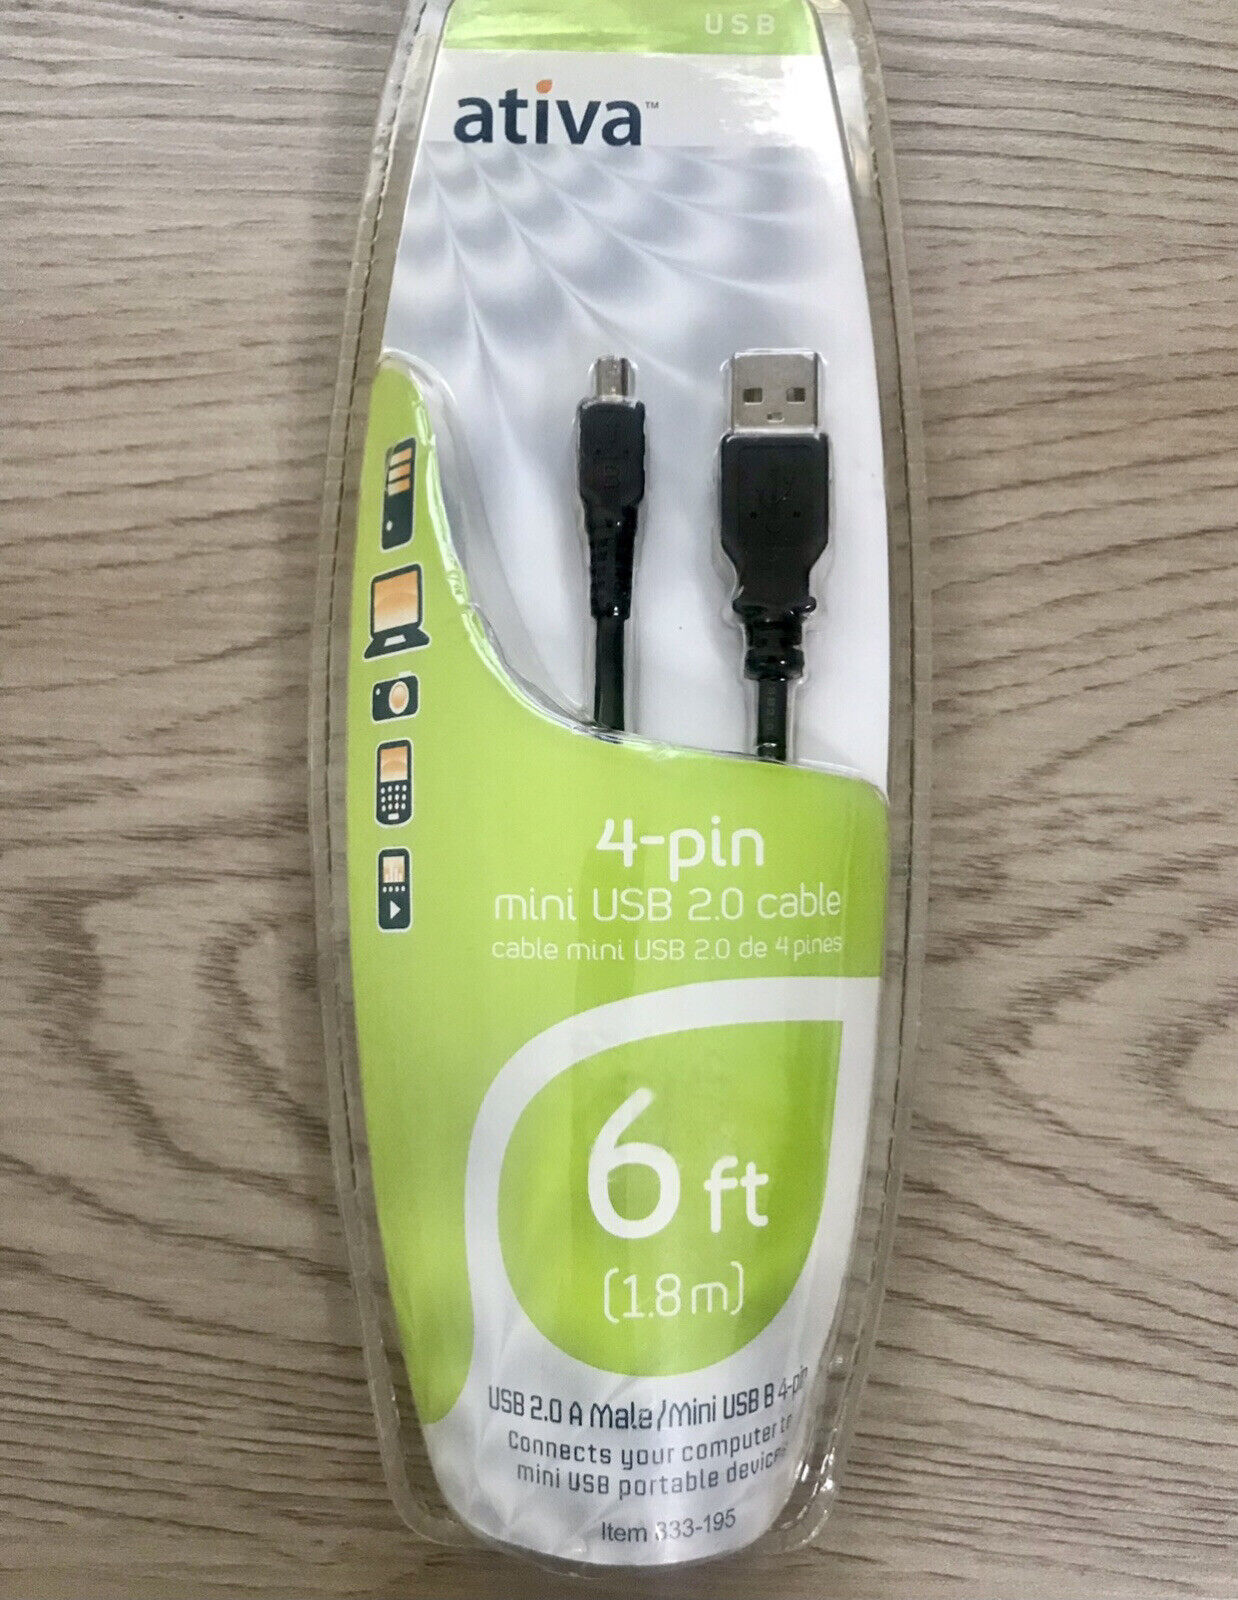 Ativa 4-Pin Mini USB 2.0 Cable | 6ft. (1.8m) | A Male/Mini USB